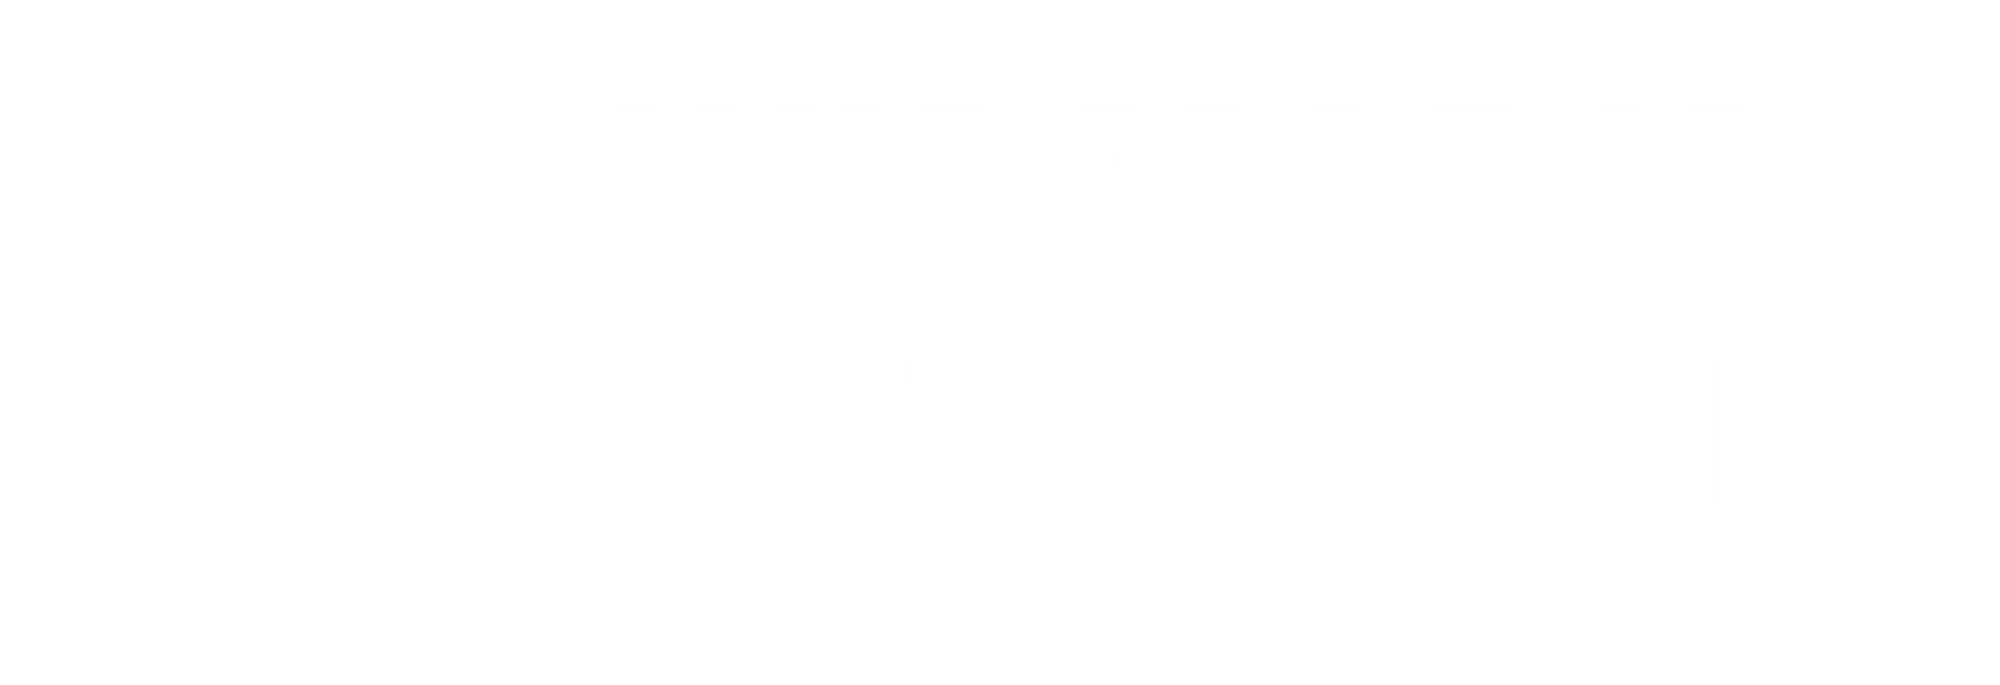 Widmark Research